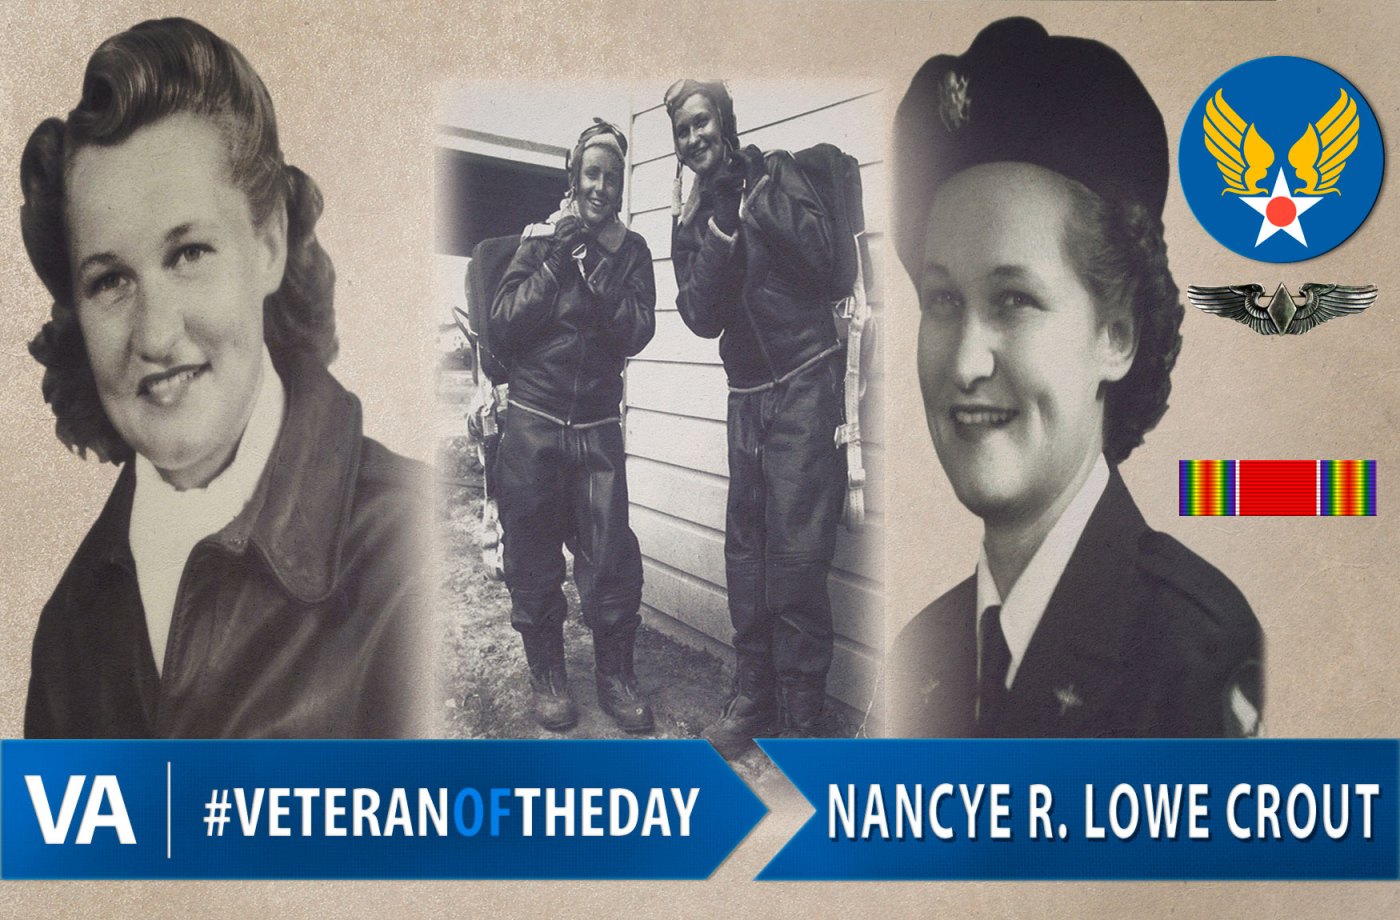 Nancye Crout - Veteran of the Day